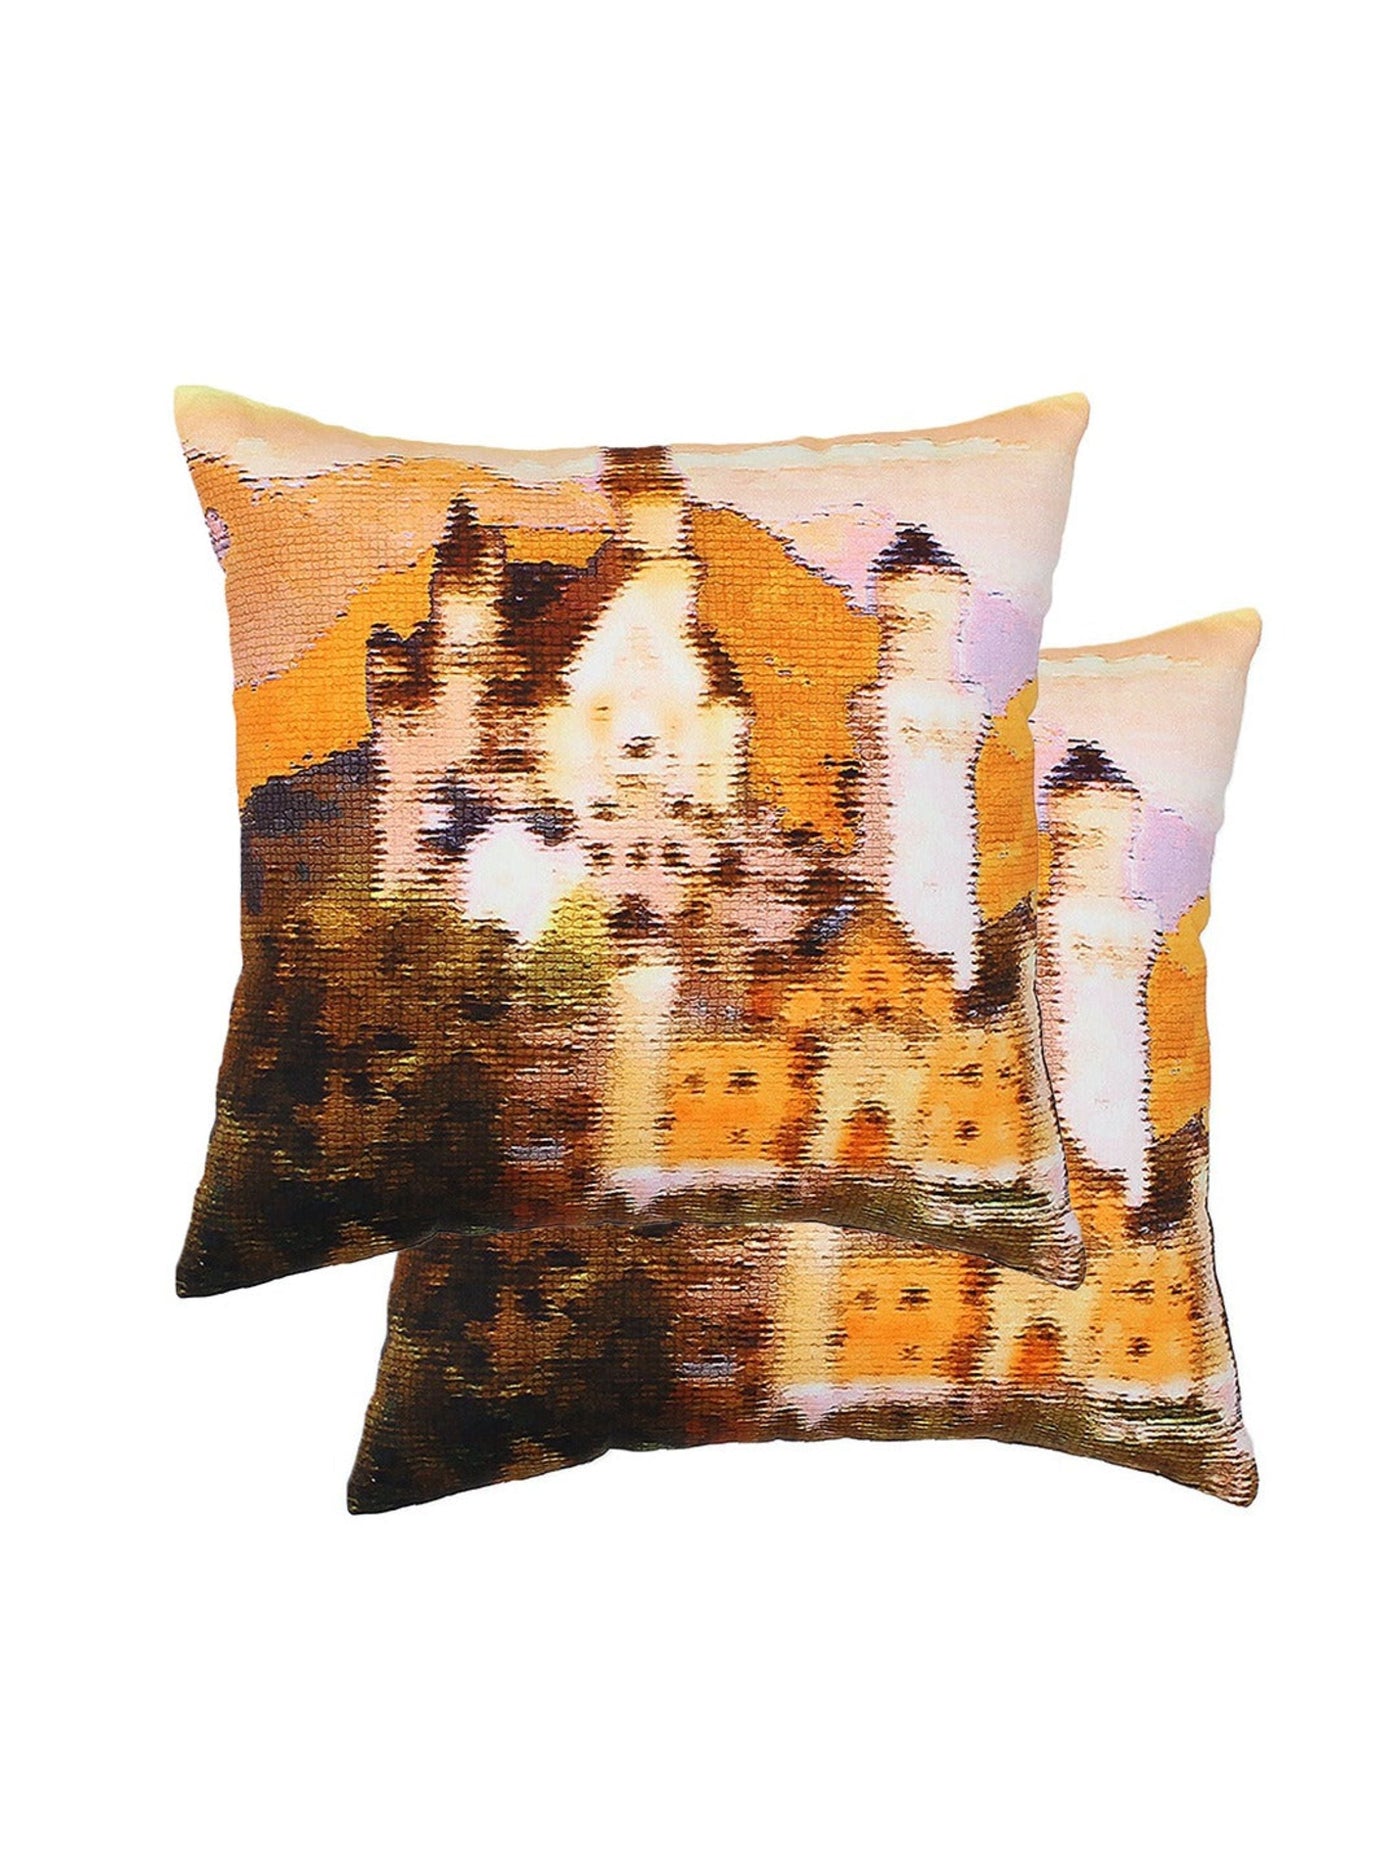 Cushion Cover - Neuschwanstein Castle Cotton 2 s-Pink-8903773001170